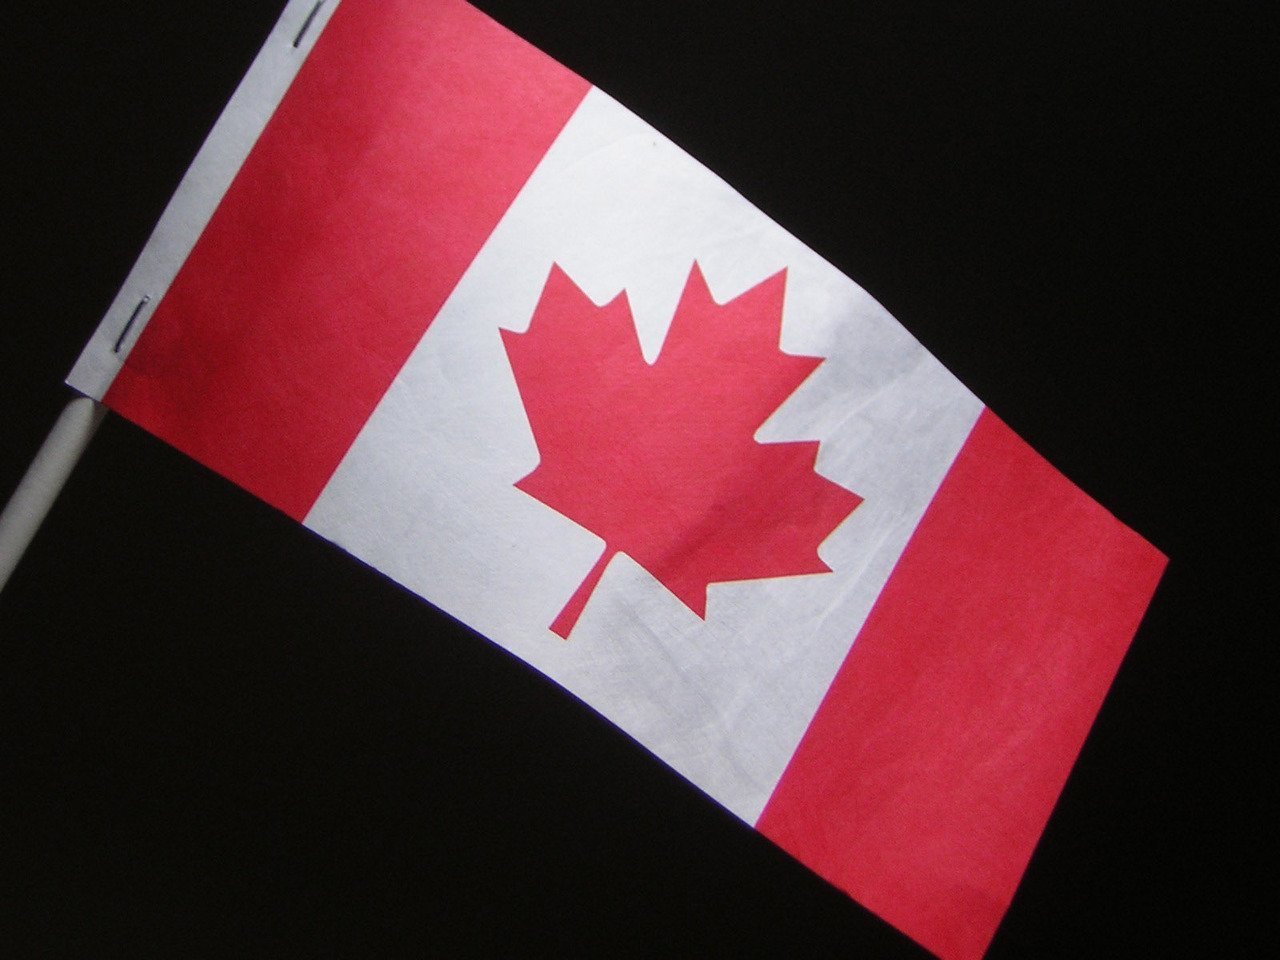 Canada a depășit pragul de 500.000 de cazuri de infectare cu COVID-19